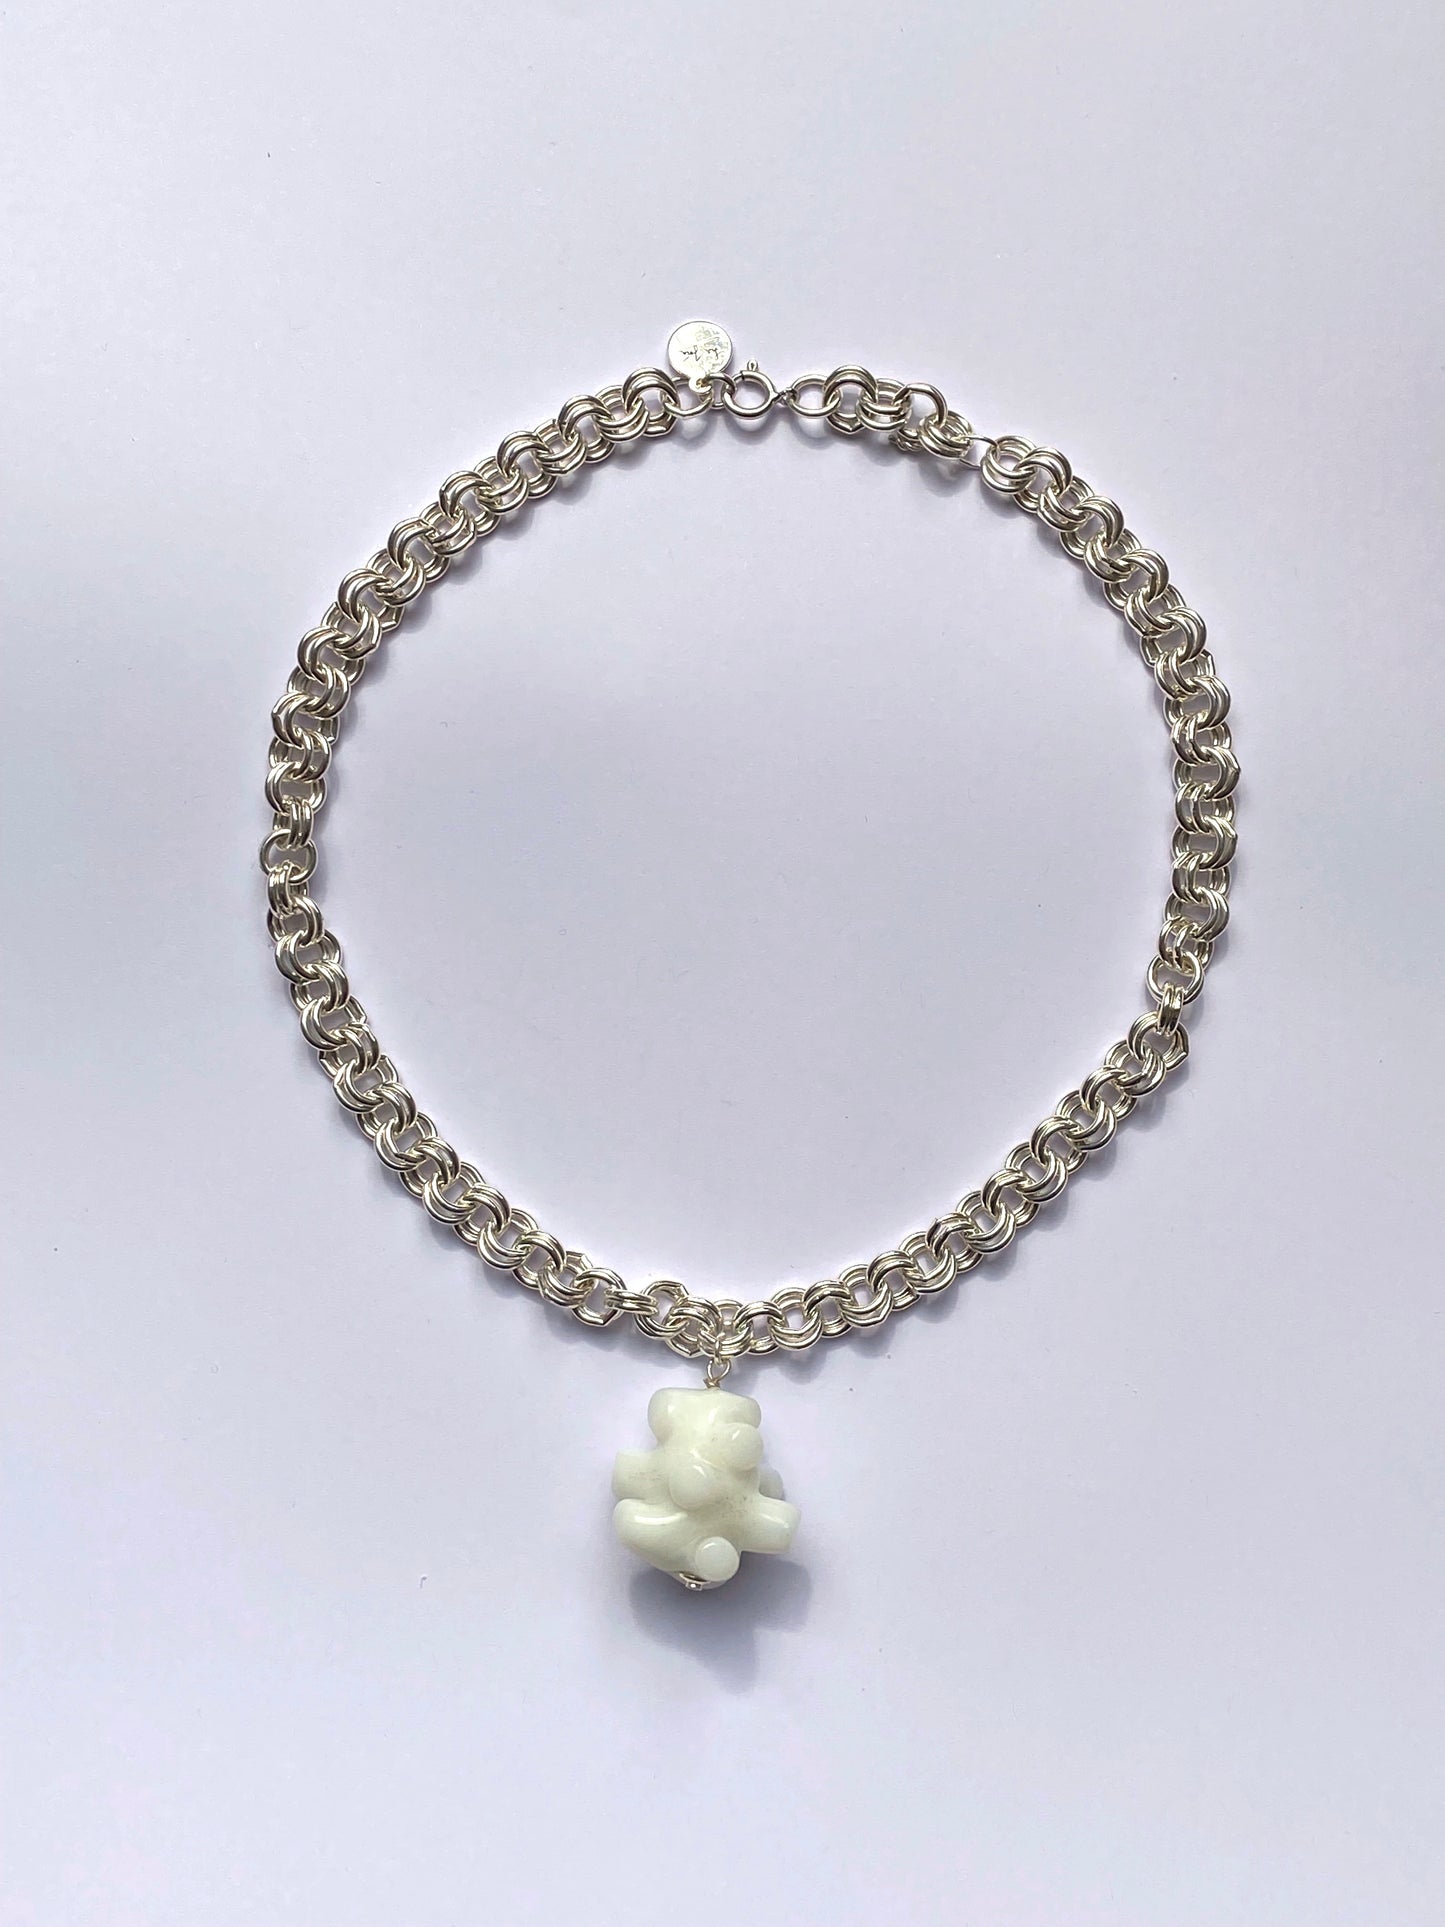 Abashi necklace - White